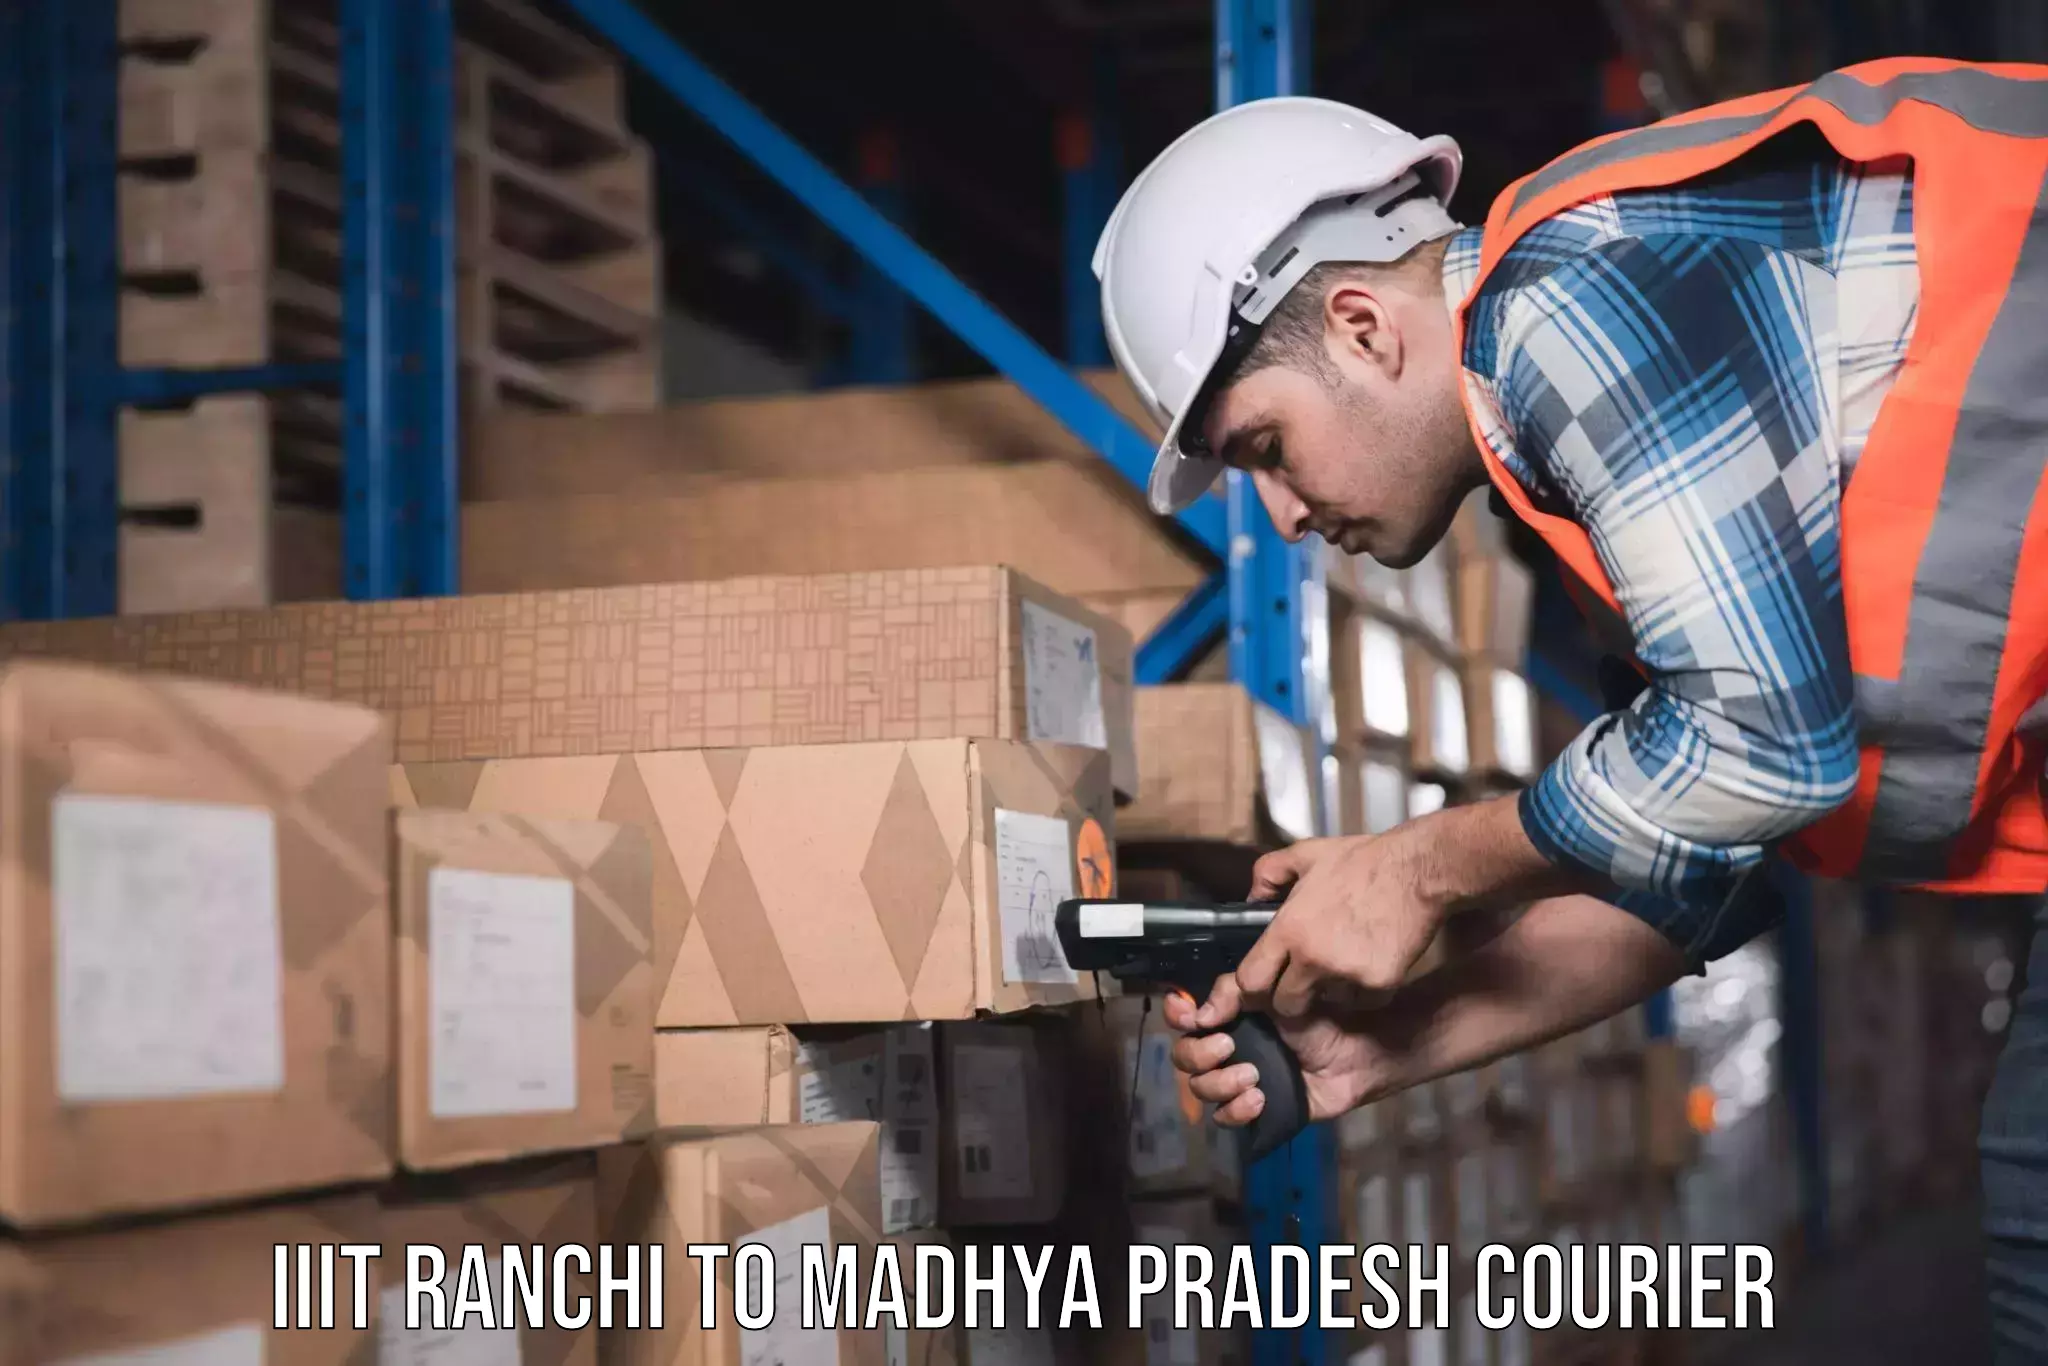 Professional furniture movers IIIT Ranchi to Sleemanabad